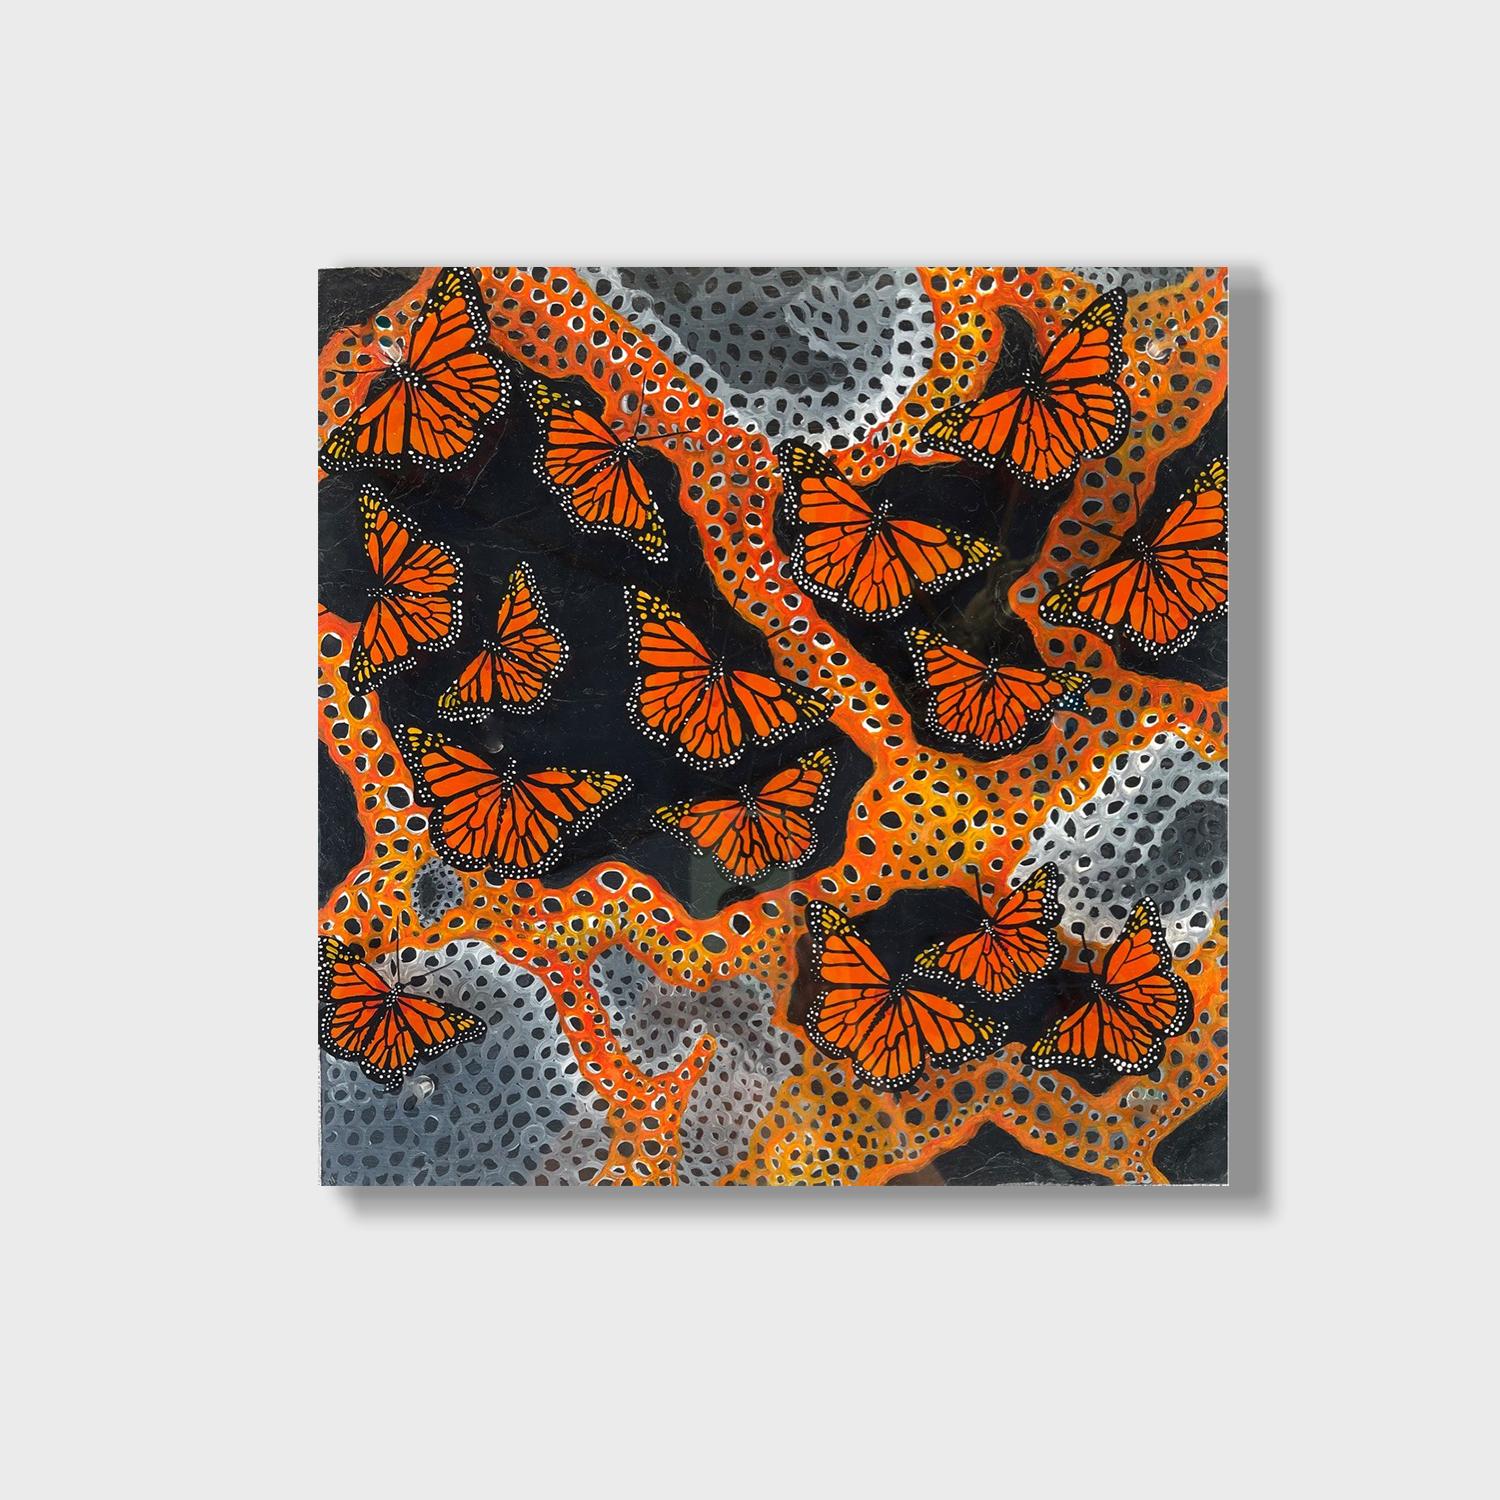 Buntes abstraktes Gemälde in Mischtechnik mit Schmetterlingen, „Safe Landing“, 2021 (Abstrakt), Mixed Media Art, von Kathleen Kane-Murrell 